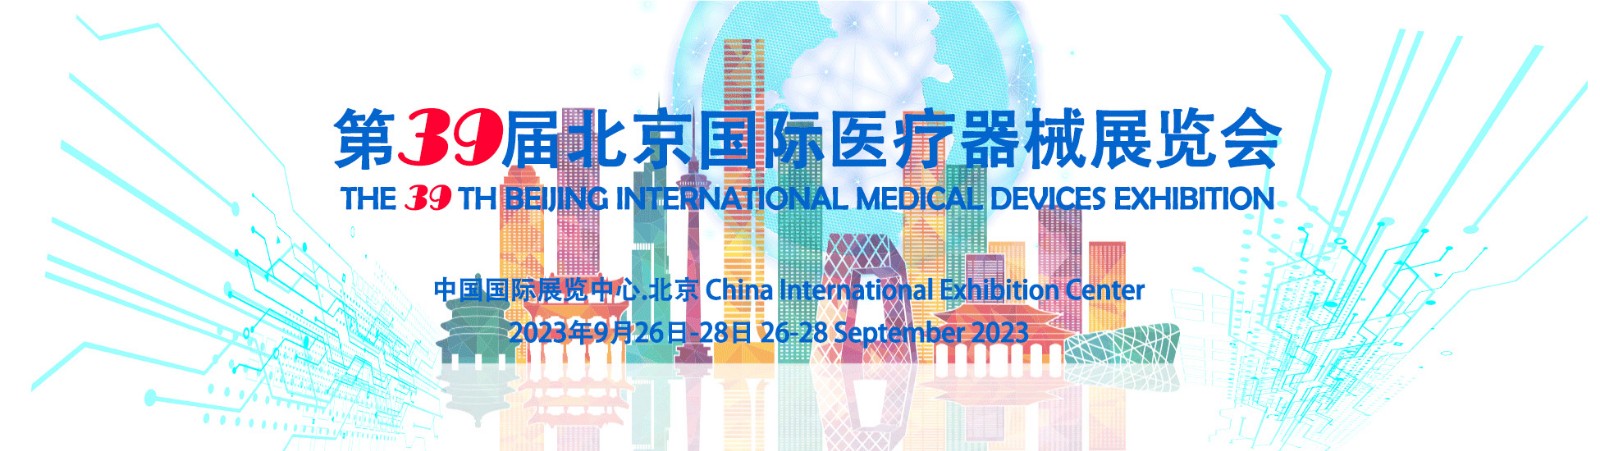 制造医疗、守护健康 2023北京国际医疗器械展览会展会介绍